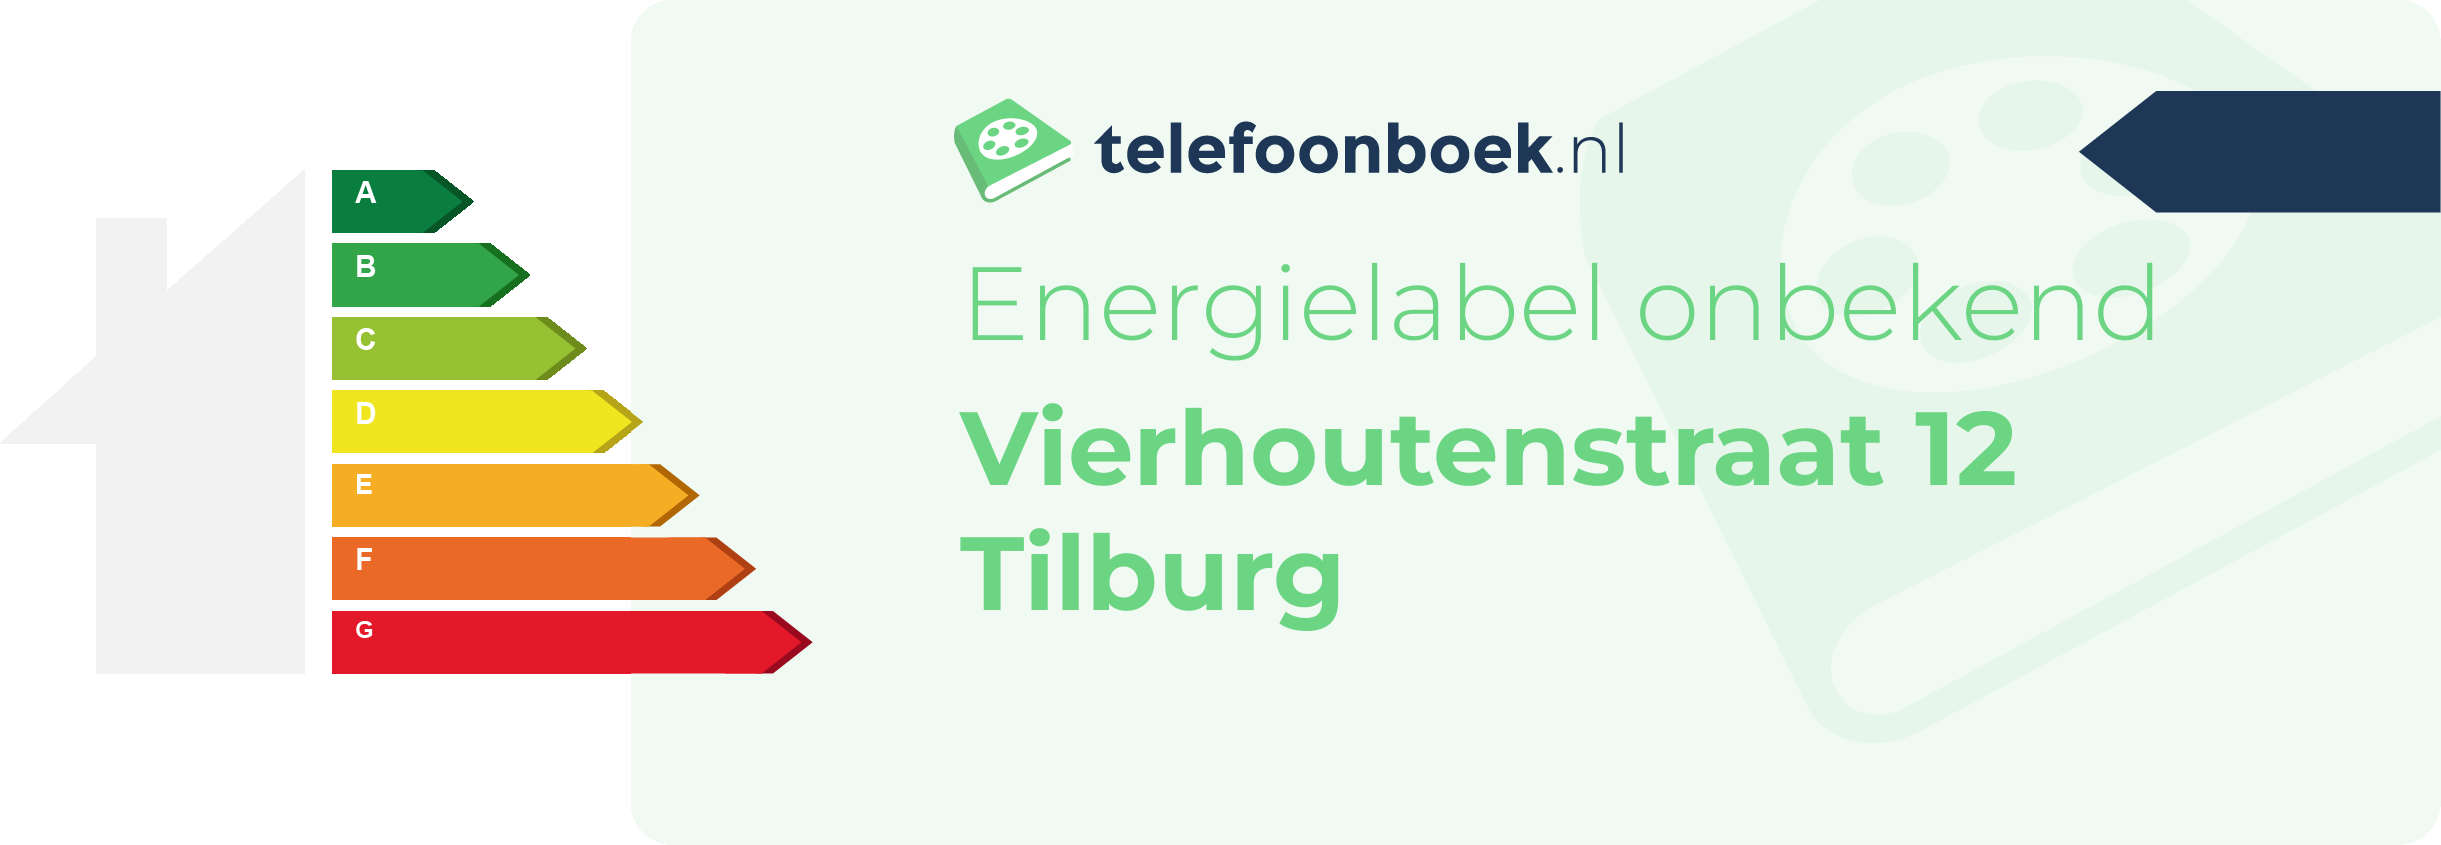 Energielabel Vierhoutenstraat 12 Tilburg